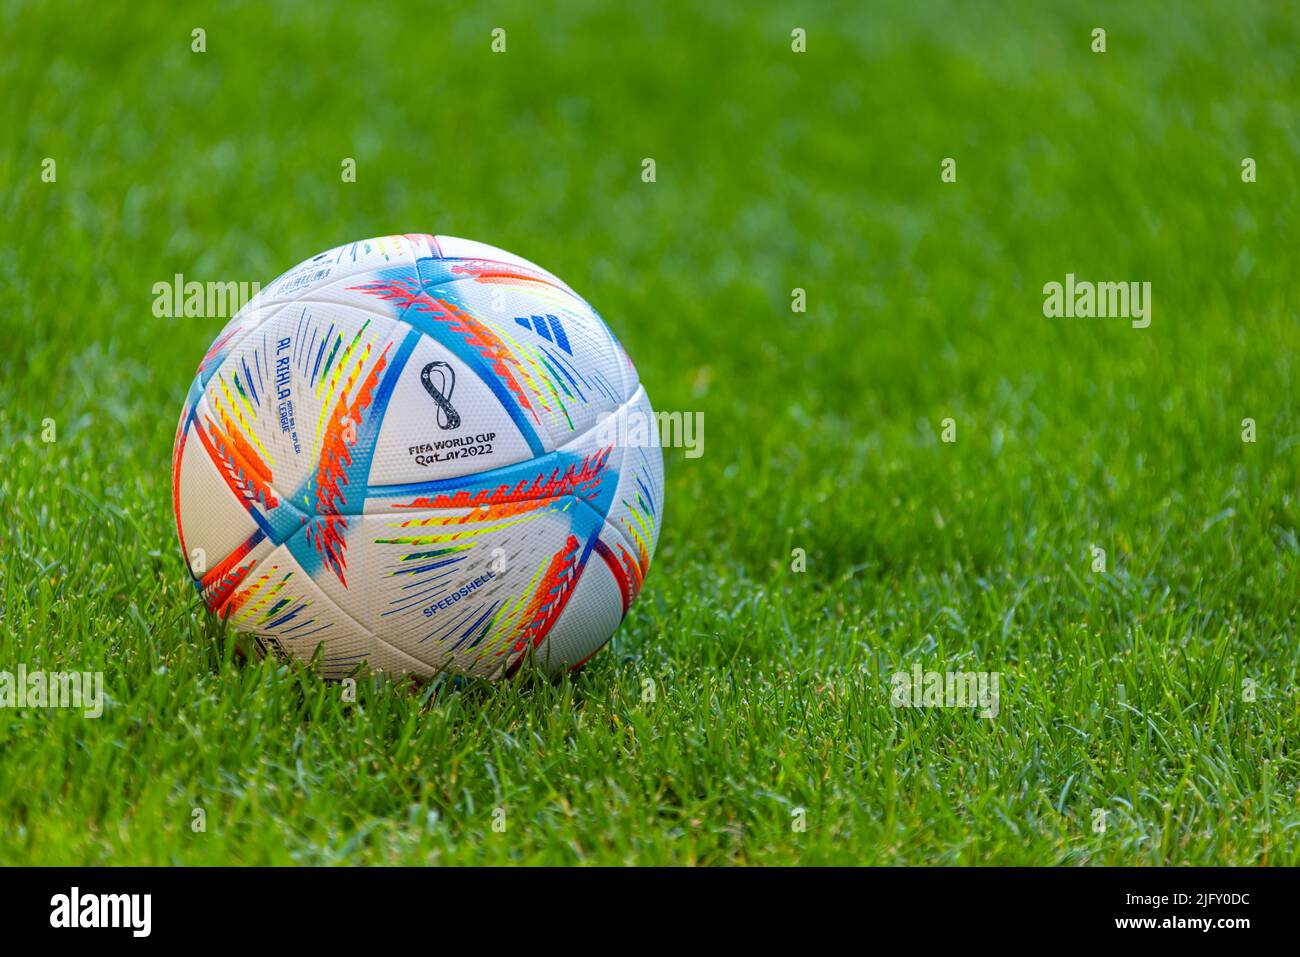 Al Khor, Qatar. 5 juillet 2022. Un ballon de football Adidas Al Rihla sur un terrain de football à l'herbe verte. Concept: Coupe du monde de la FIFA 2022 Qatar Banque D'Images